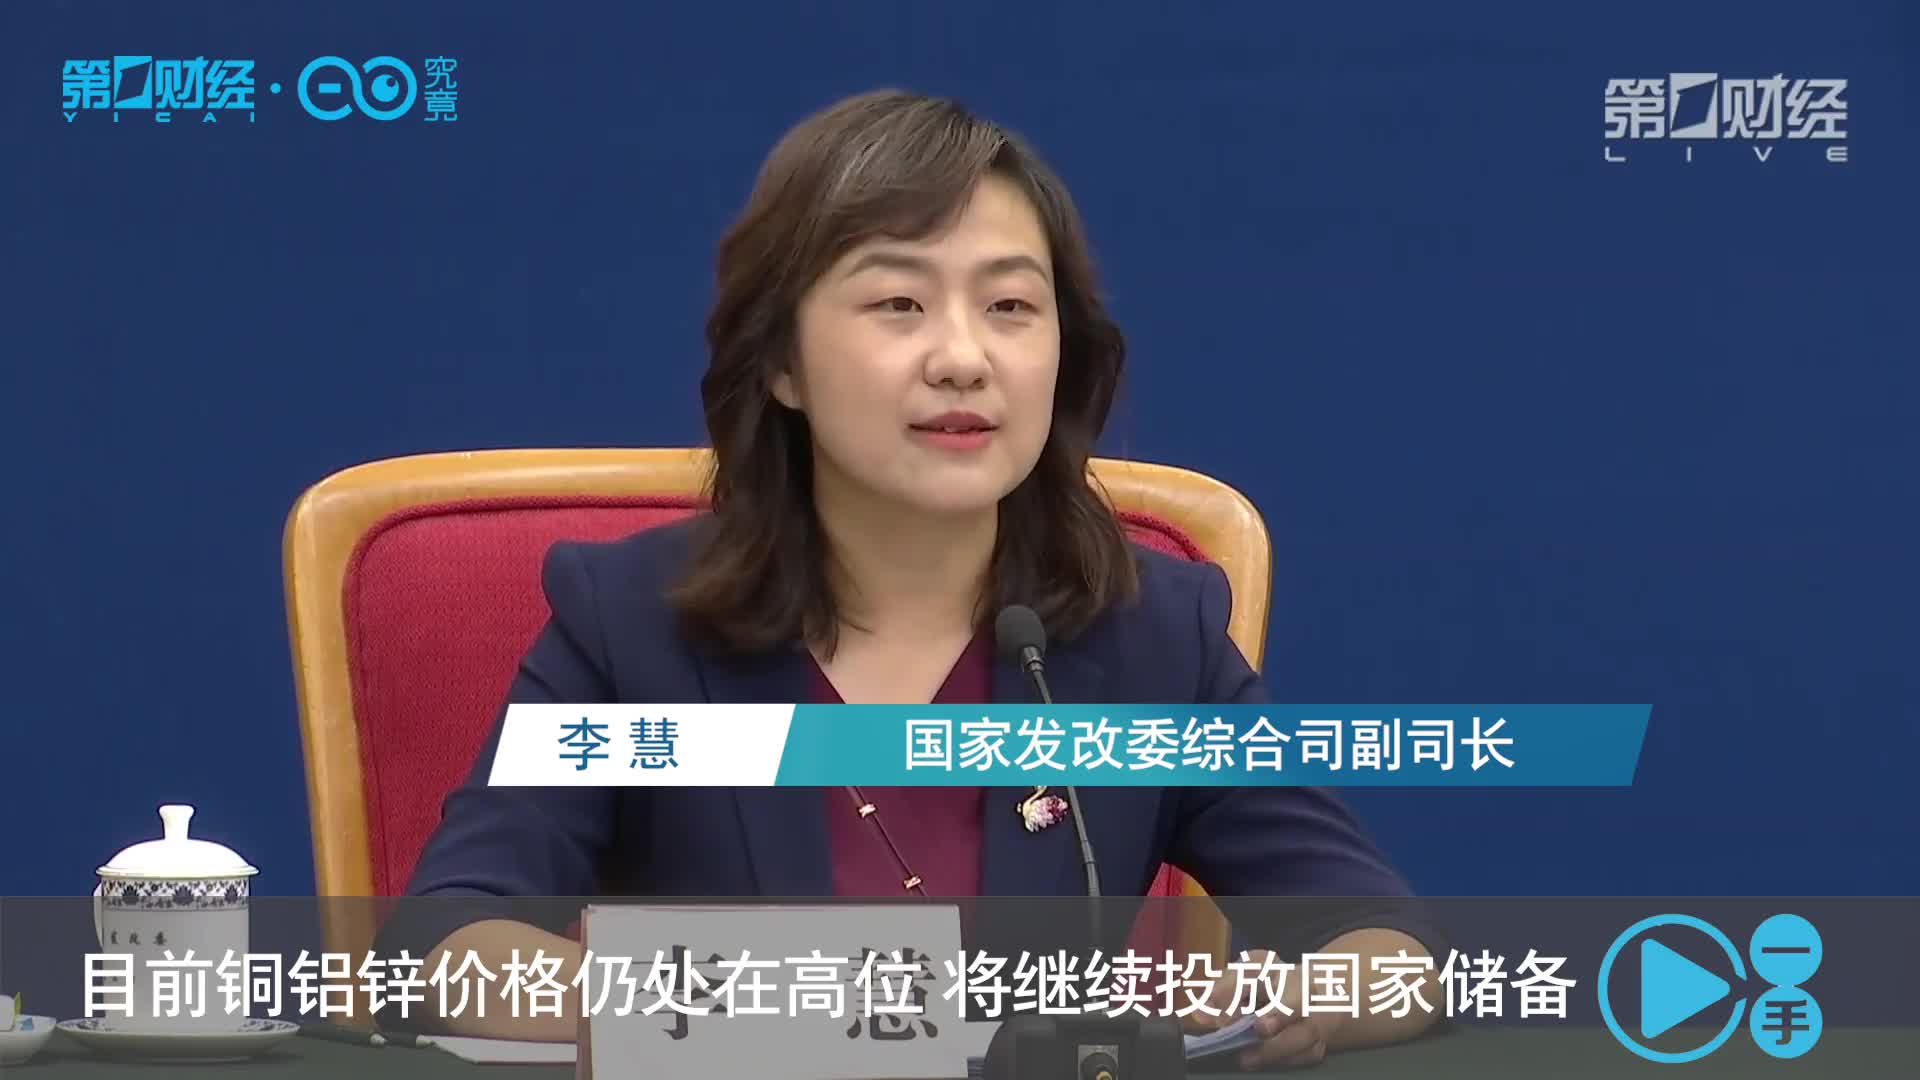 国家发改委综合司副司长李慧表示,市场各方对投放储备反应热烈,目前